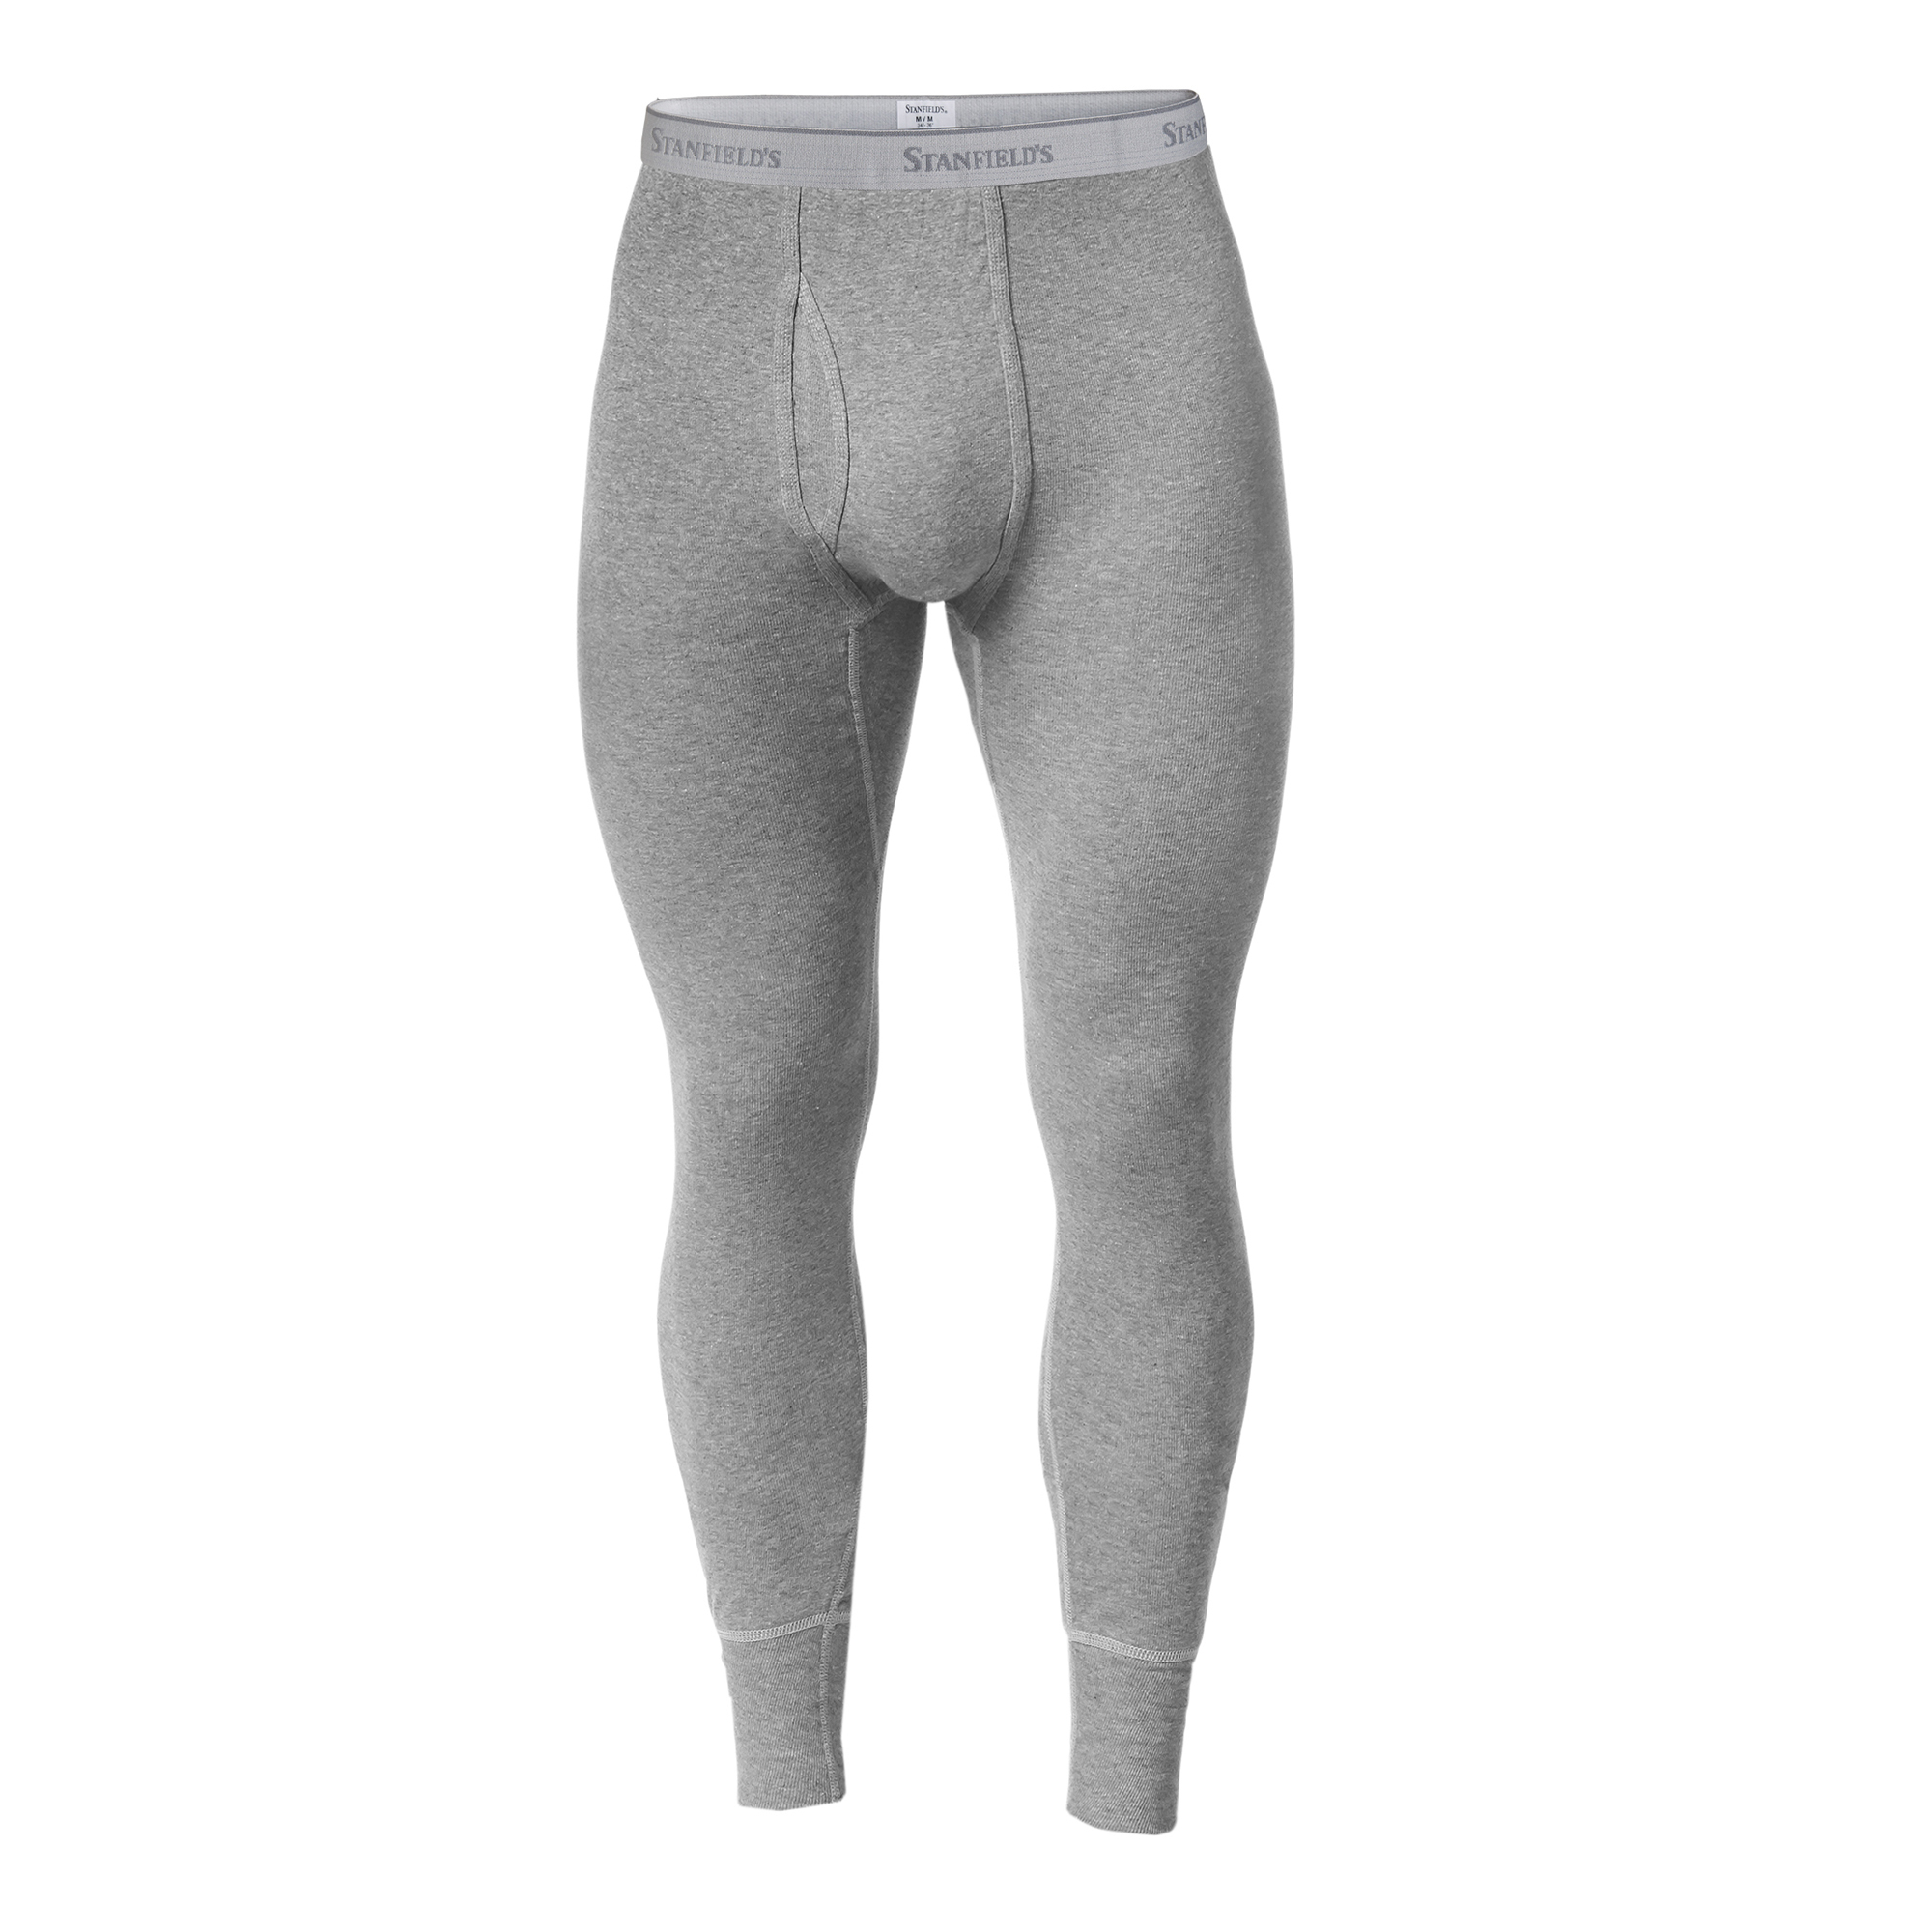 Stanfield's Men's Premium Cotton Rib Knit Long John Base Layer Pants